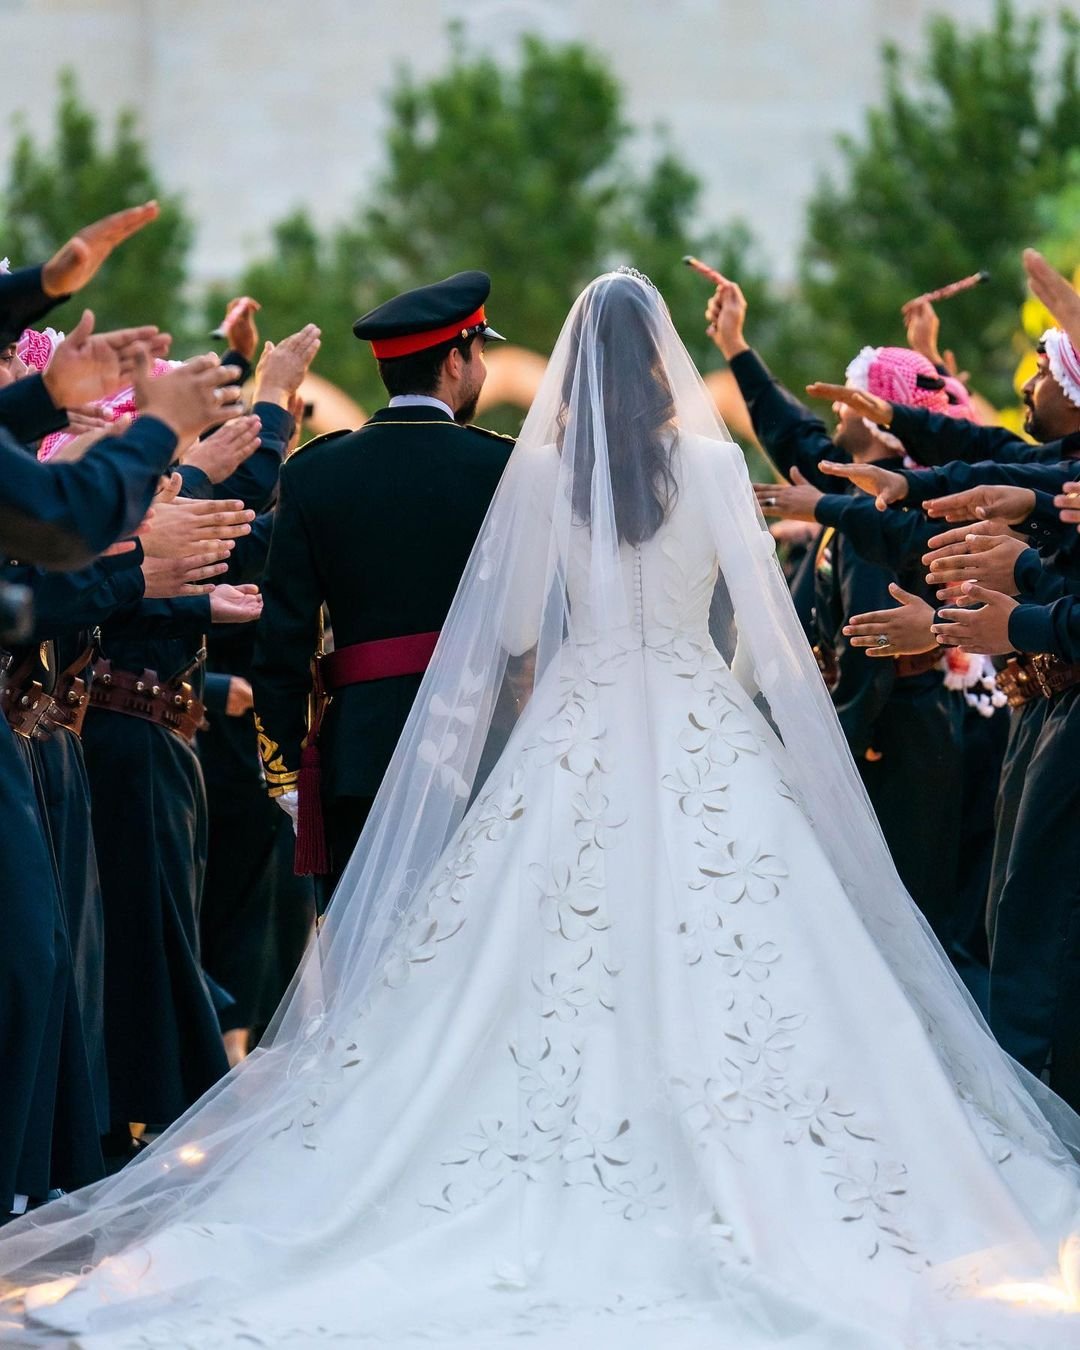 طلة رجوة ال سيف في حفل زفافها من الامير حسين بن عبدالله الثاني